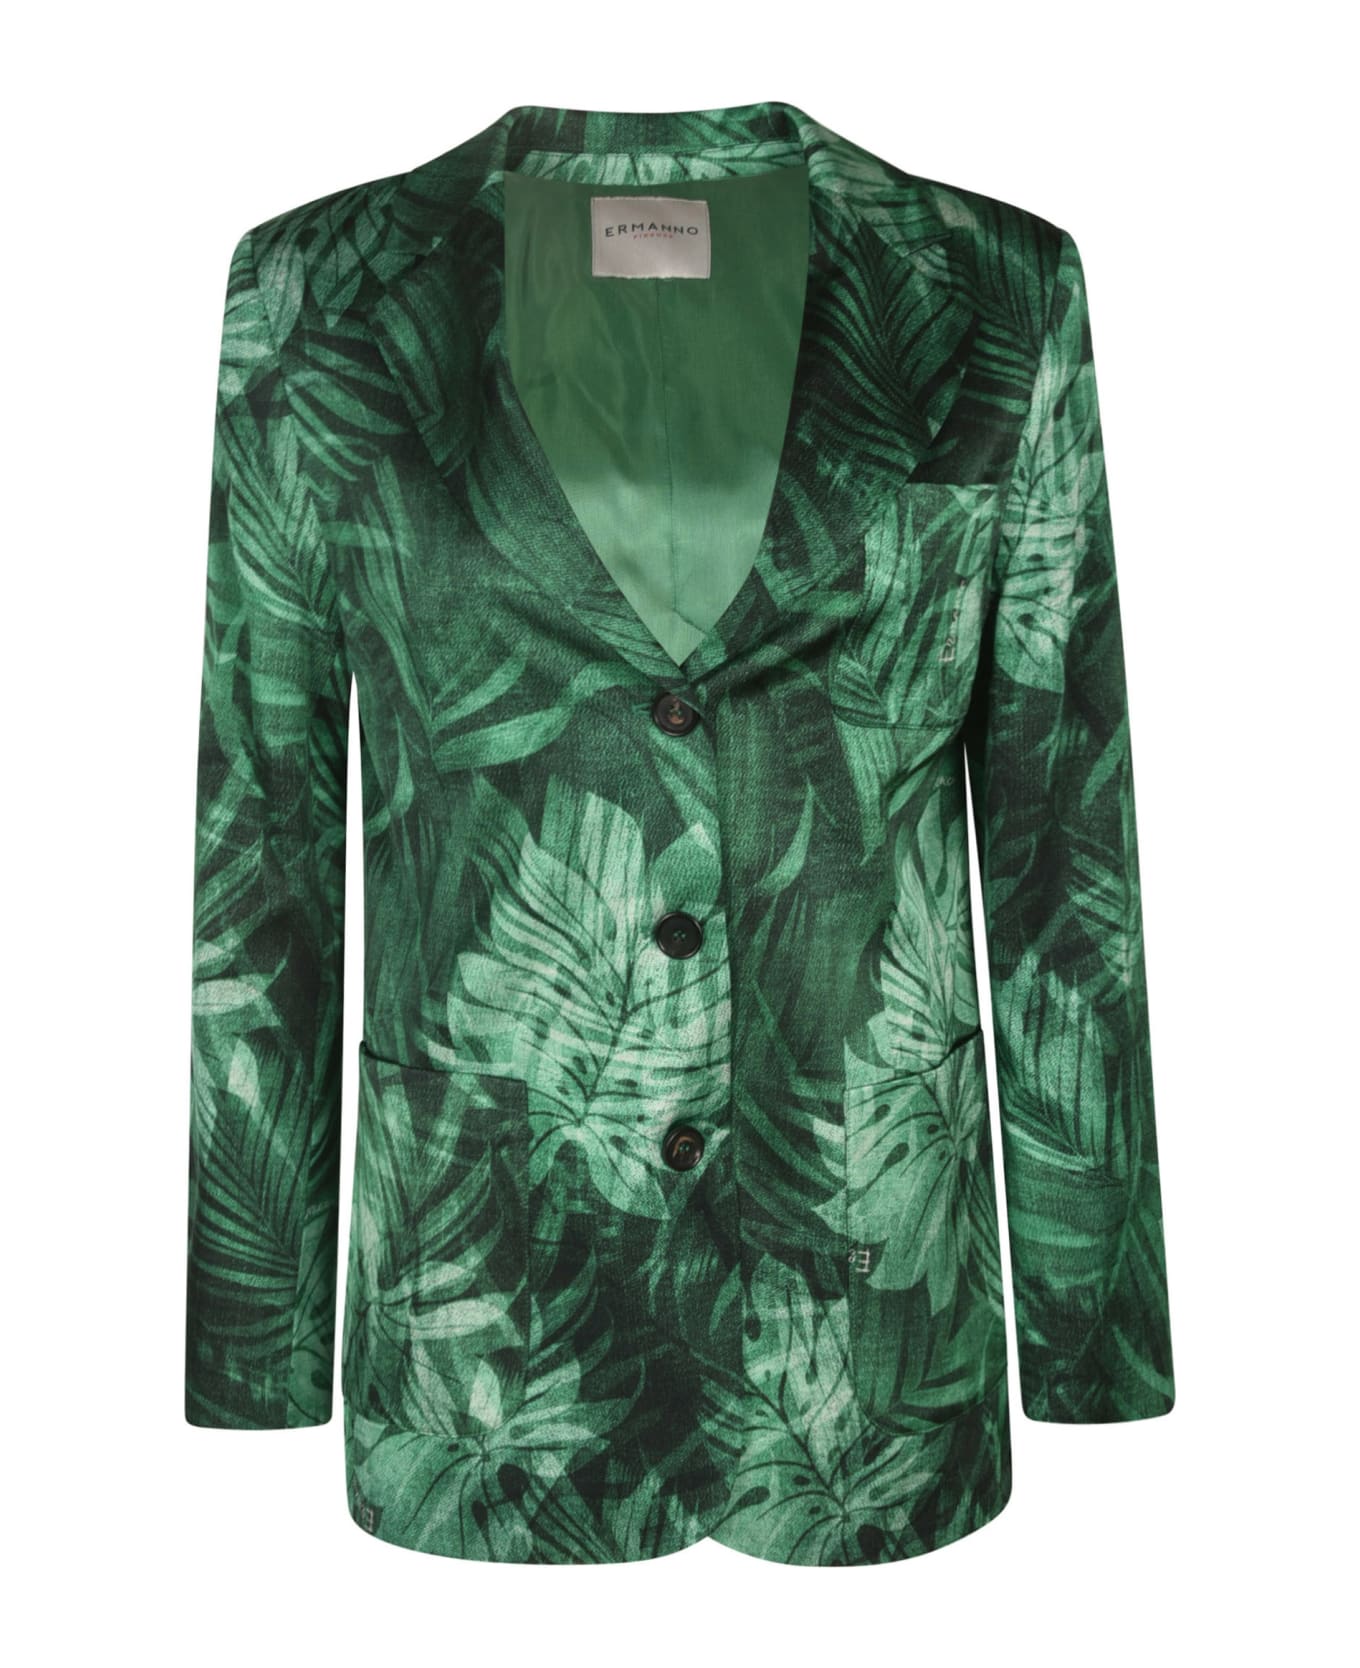 Ermanno Scervino Floral Print Jacket - Green